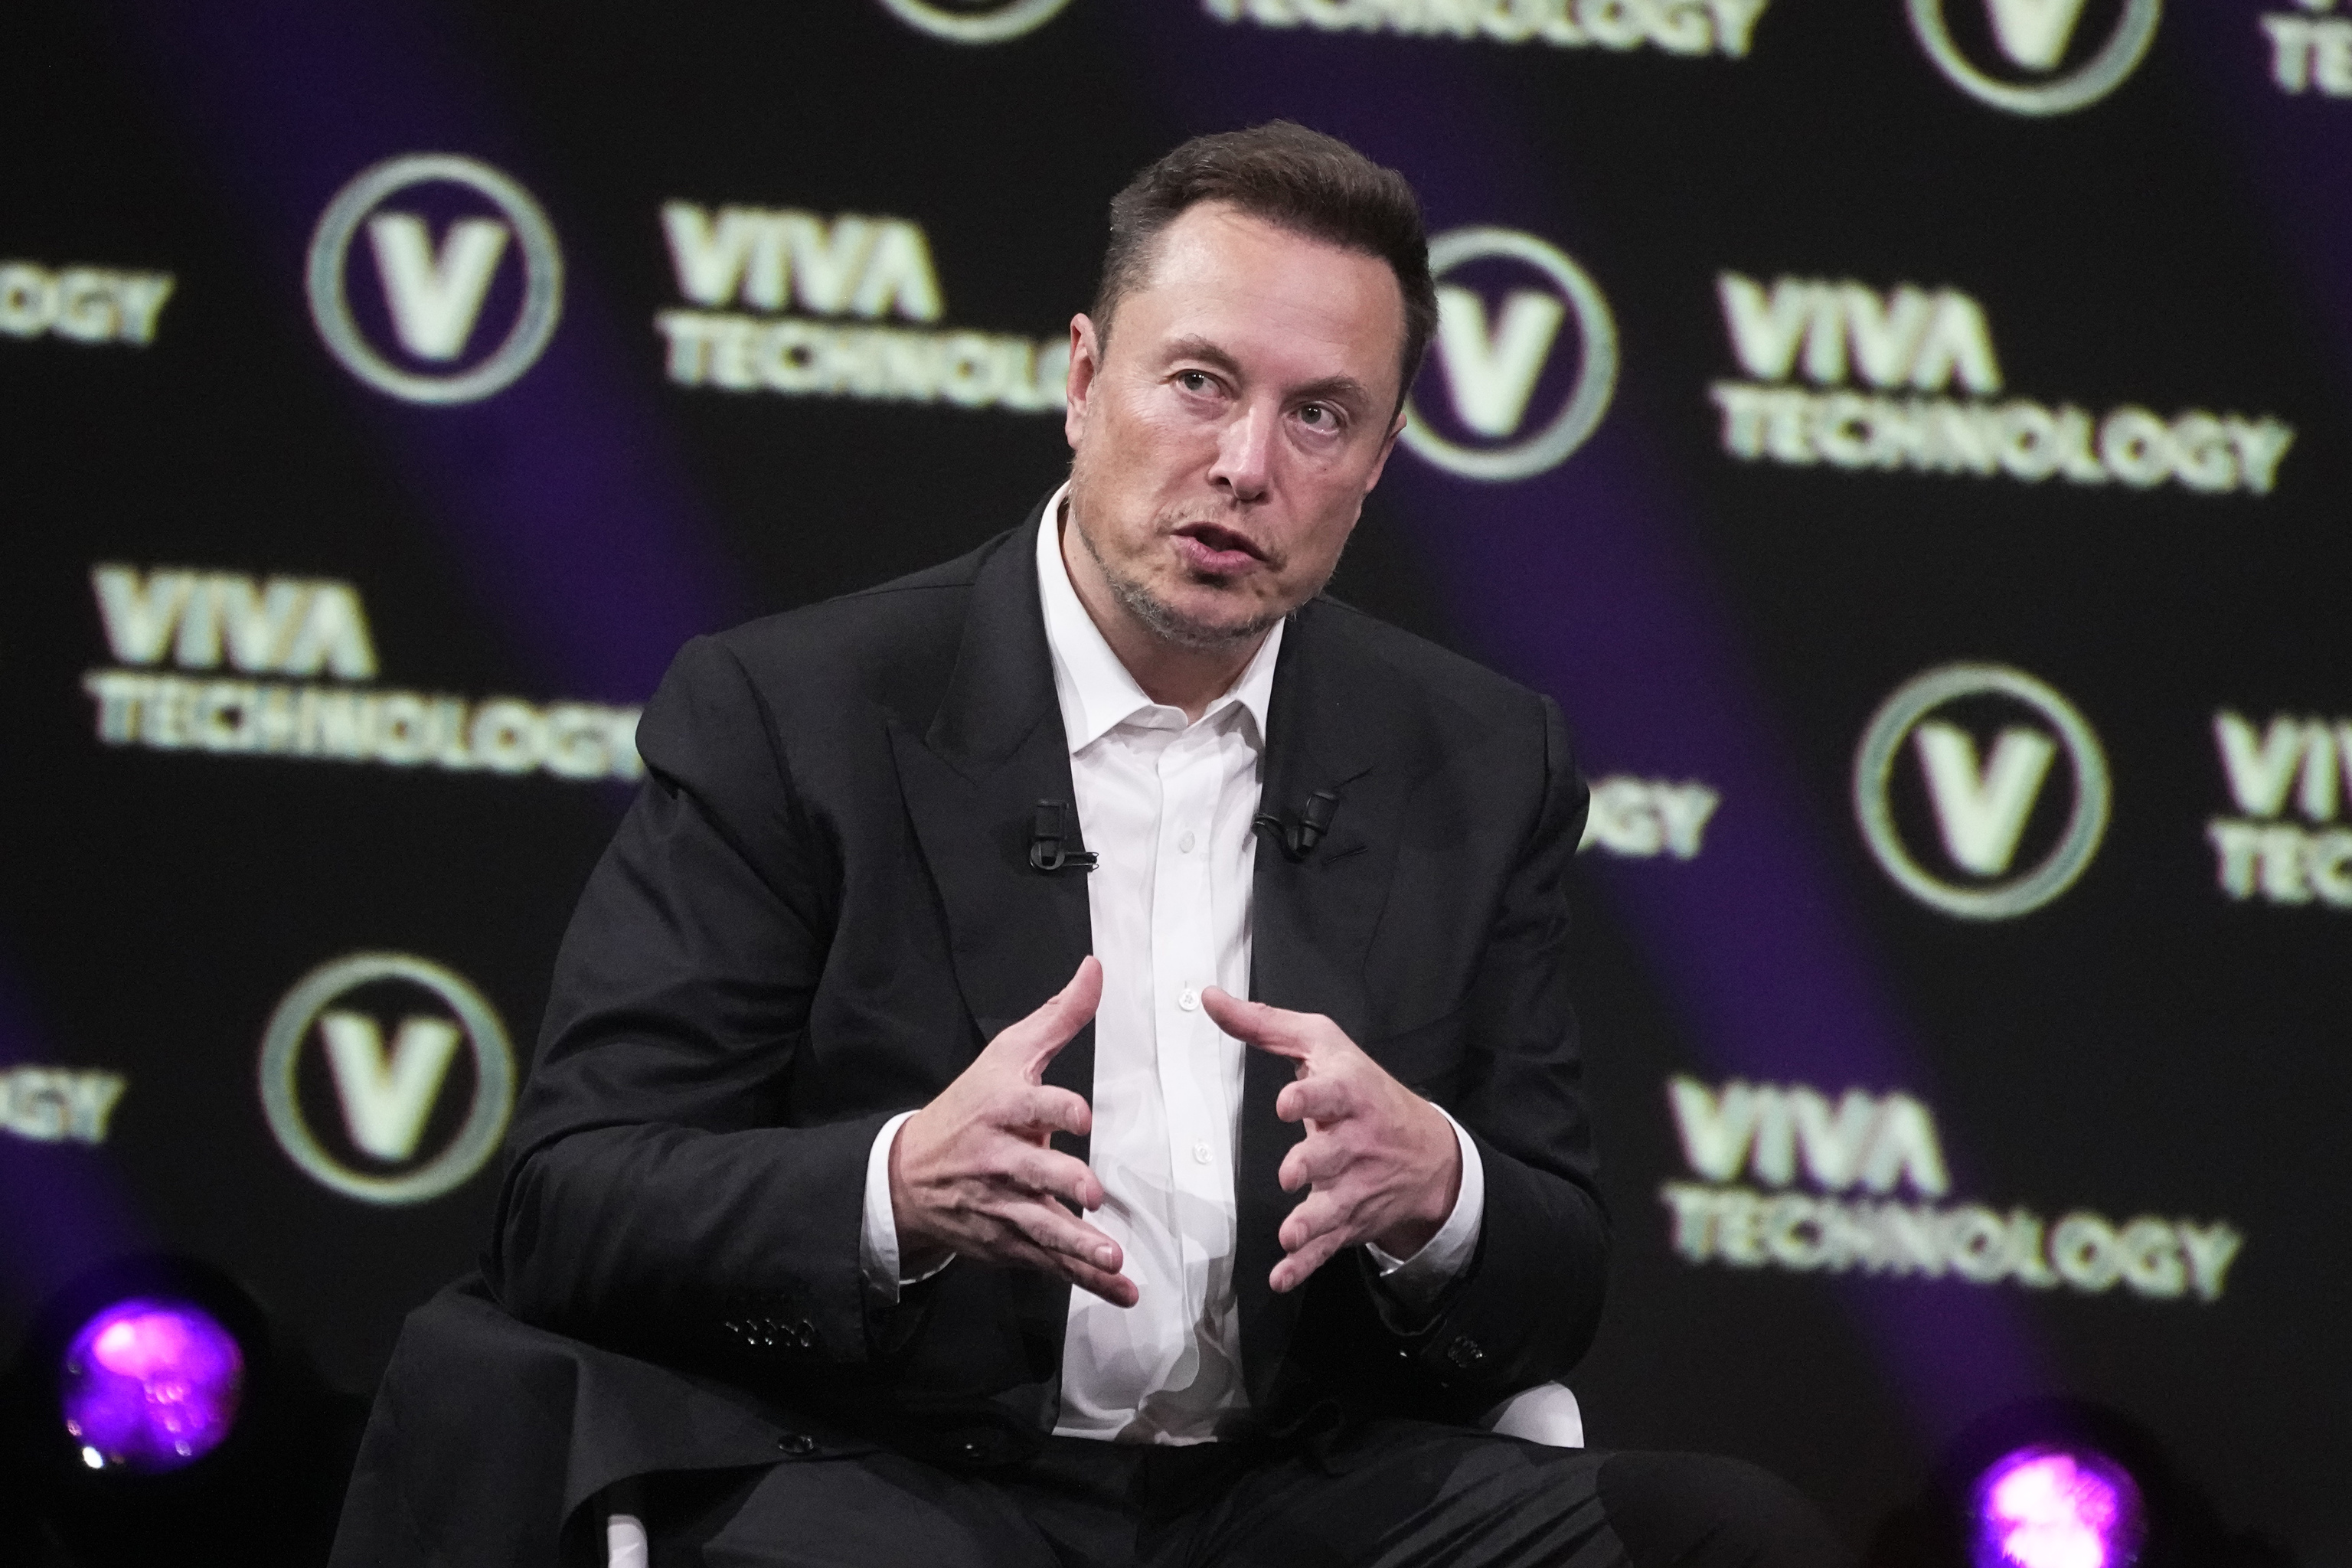 El empresario Elon Musk, en una imagen reciente.